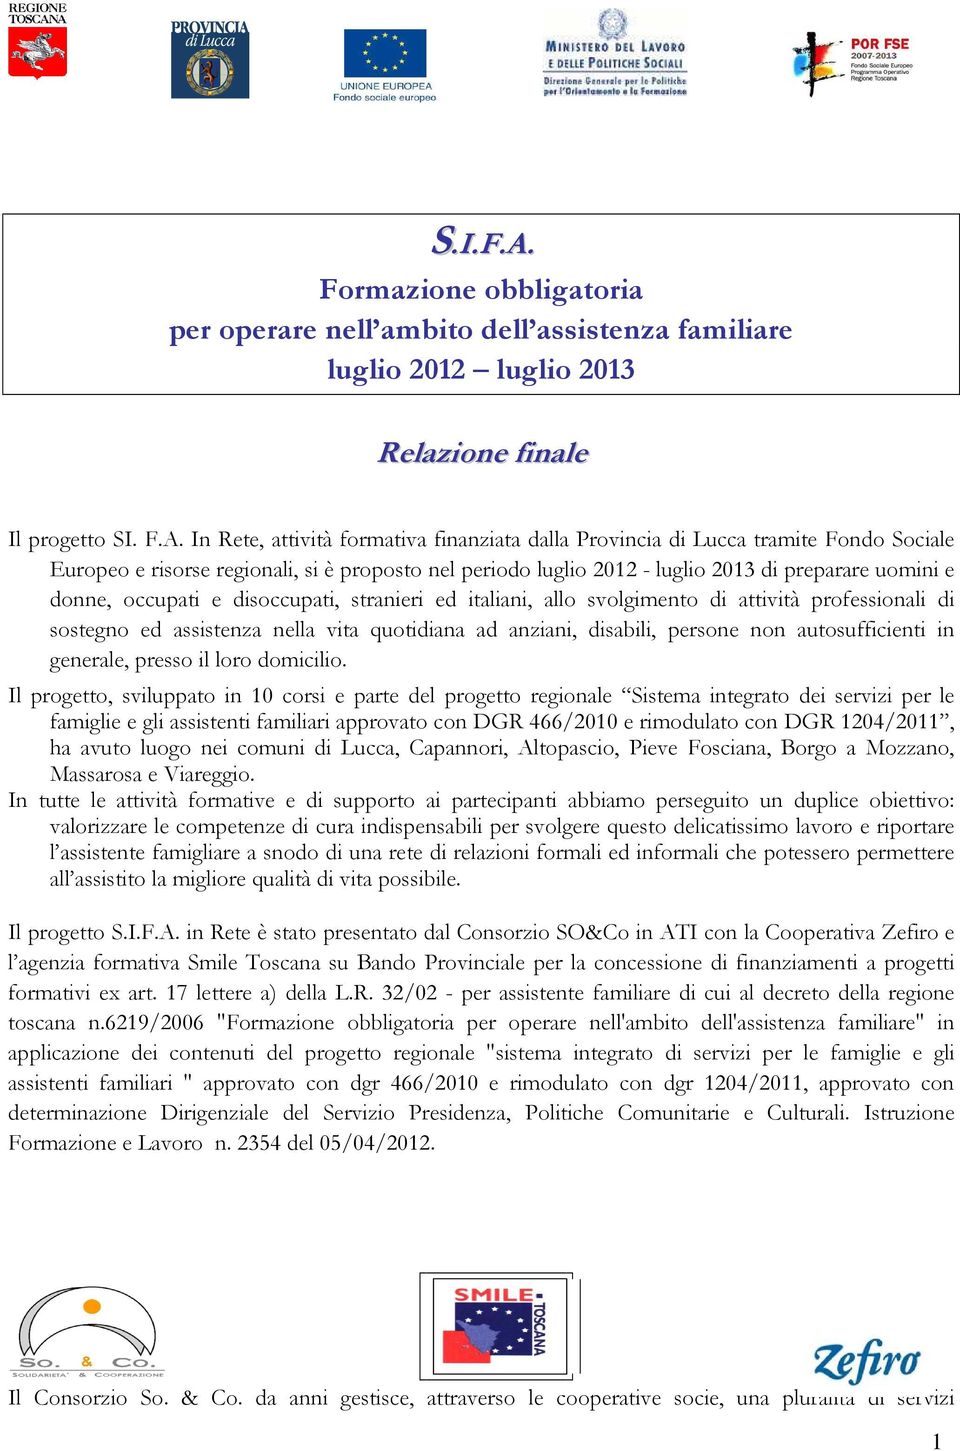 In Rete, attività formativa finanziata dalla Provincia di Lucca tramite Fondo Sociale Europeo e risorse regionali, si è proposto nel periodo luglio 2012 - luglio 2013 di preparare uomini e donne,